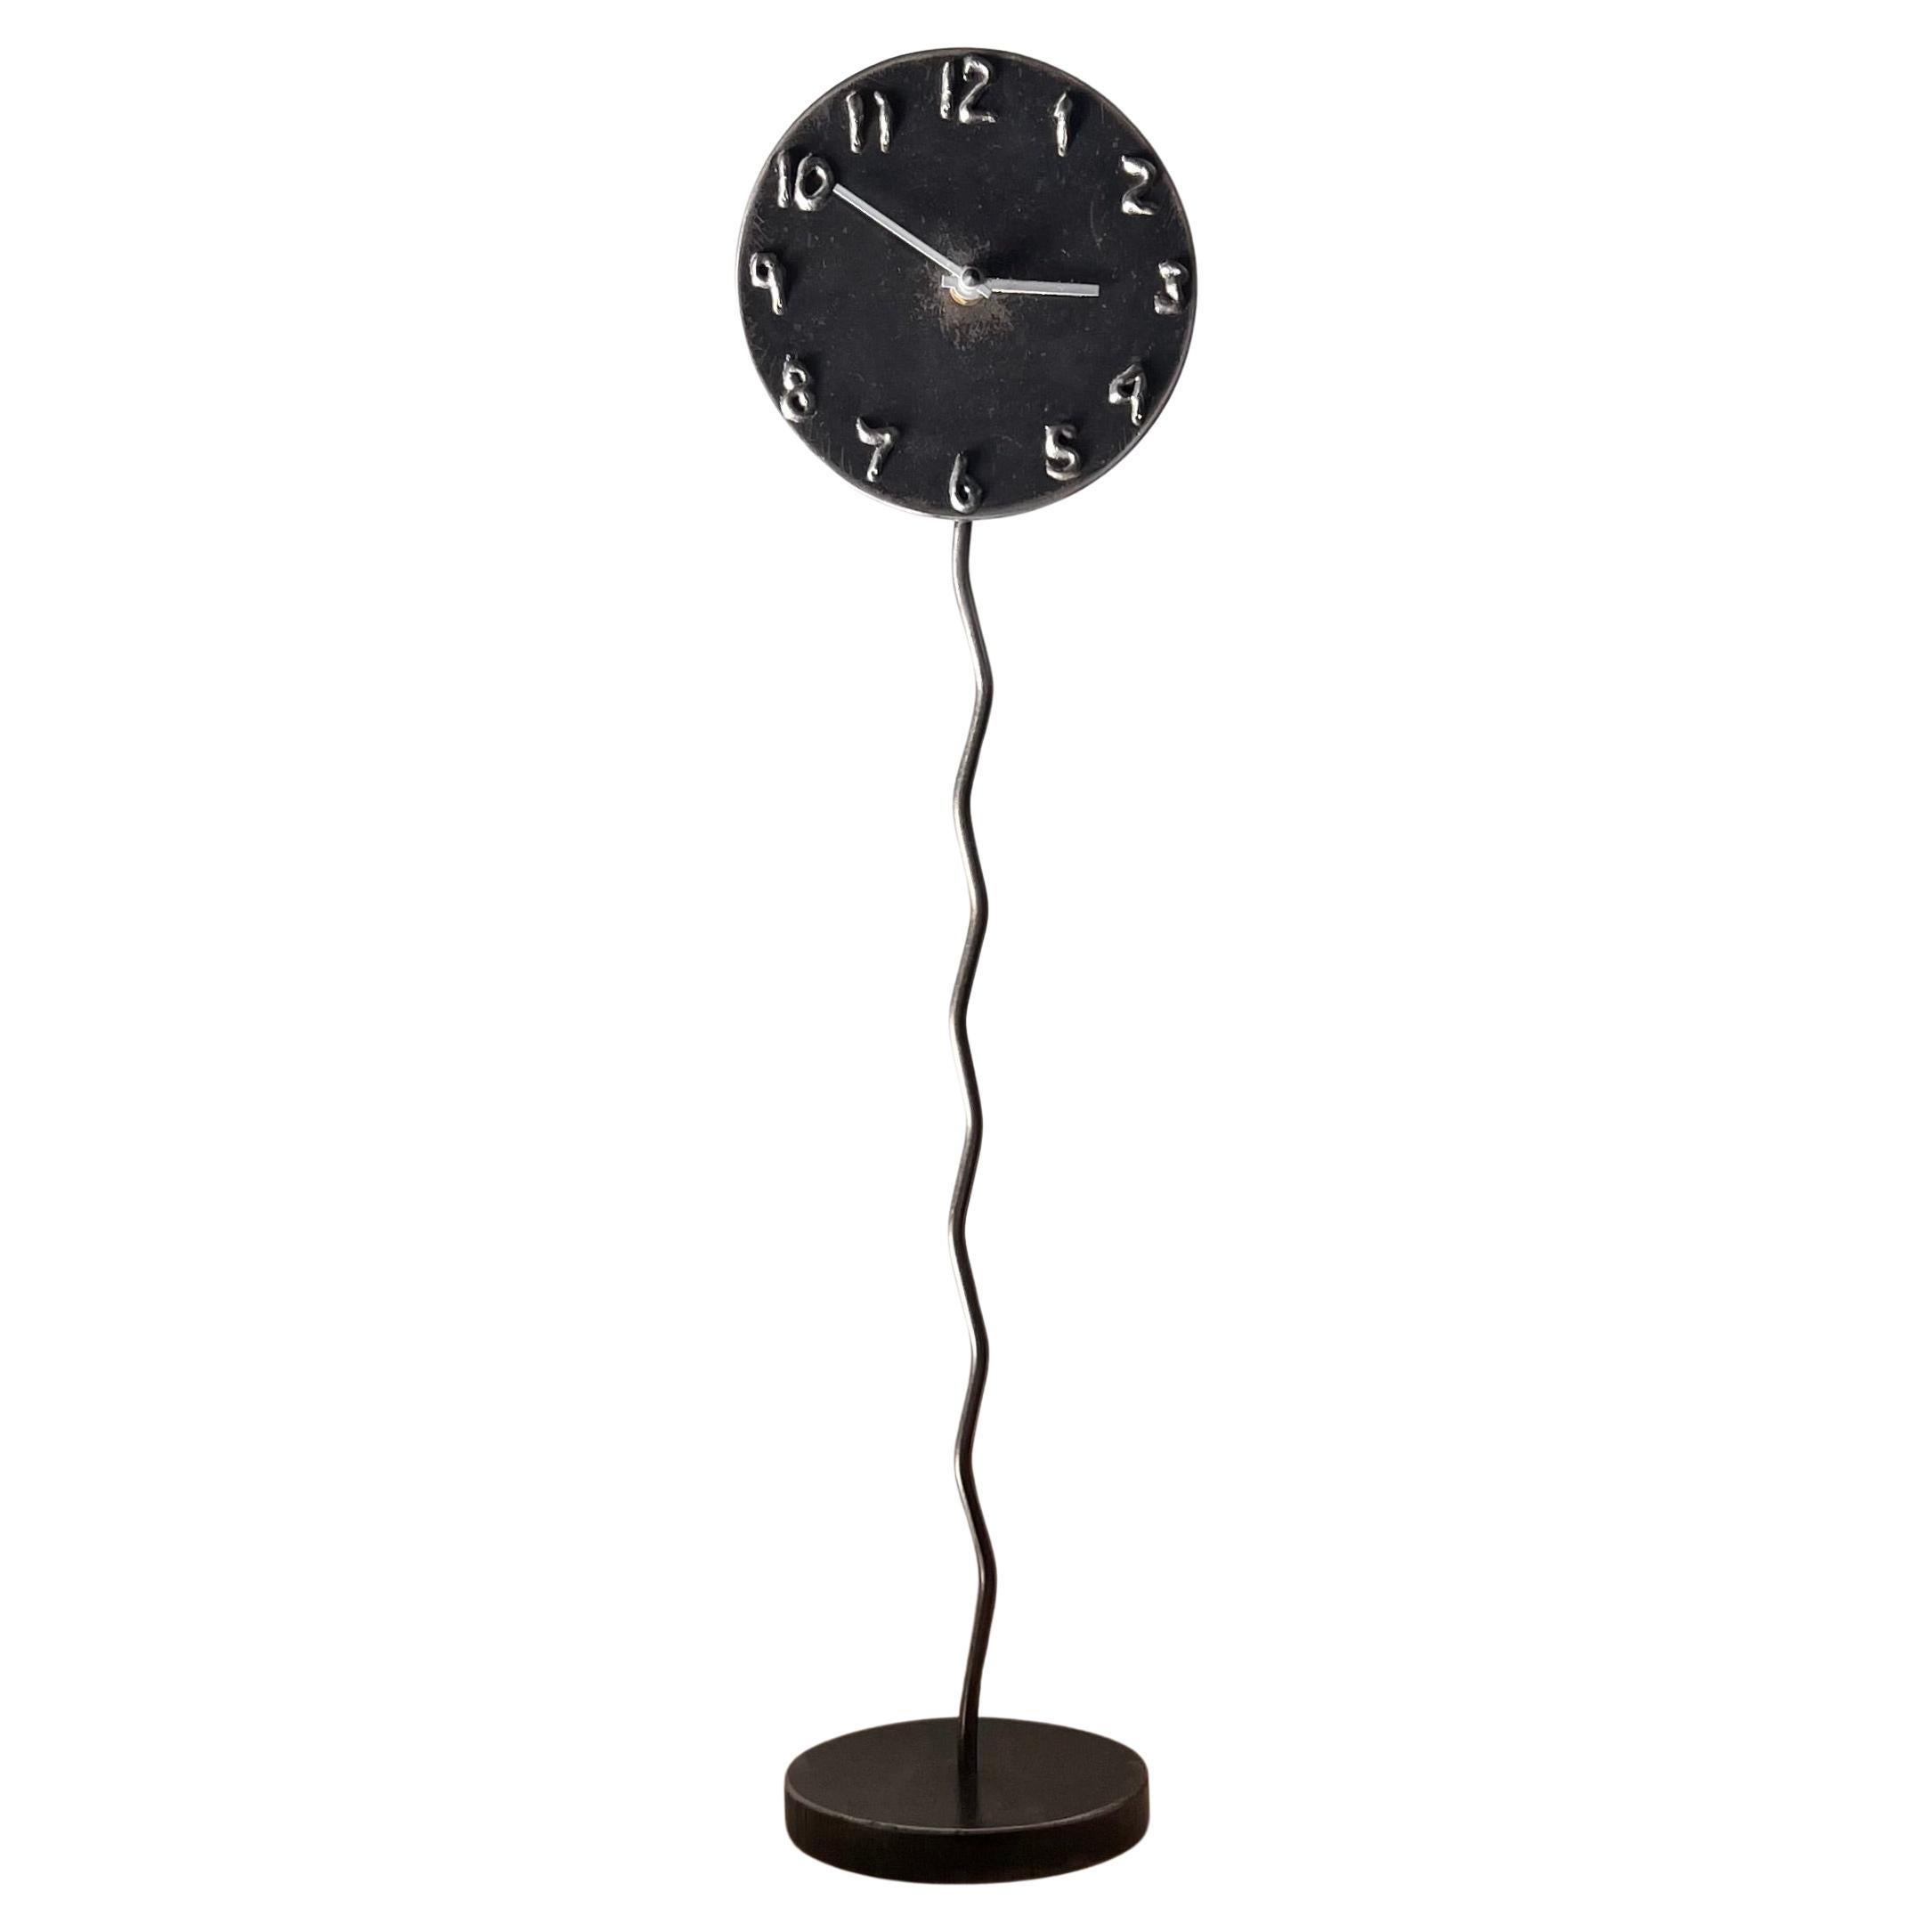 A postmodern sculptural welded metal clock by Jon Sarriugarte, signed, 1991